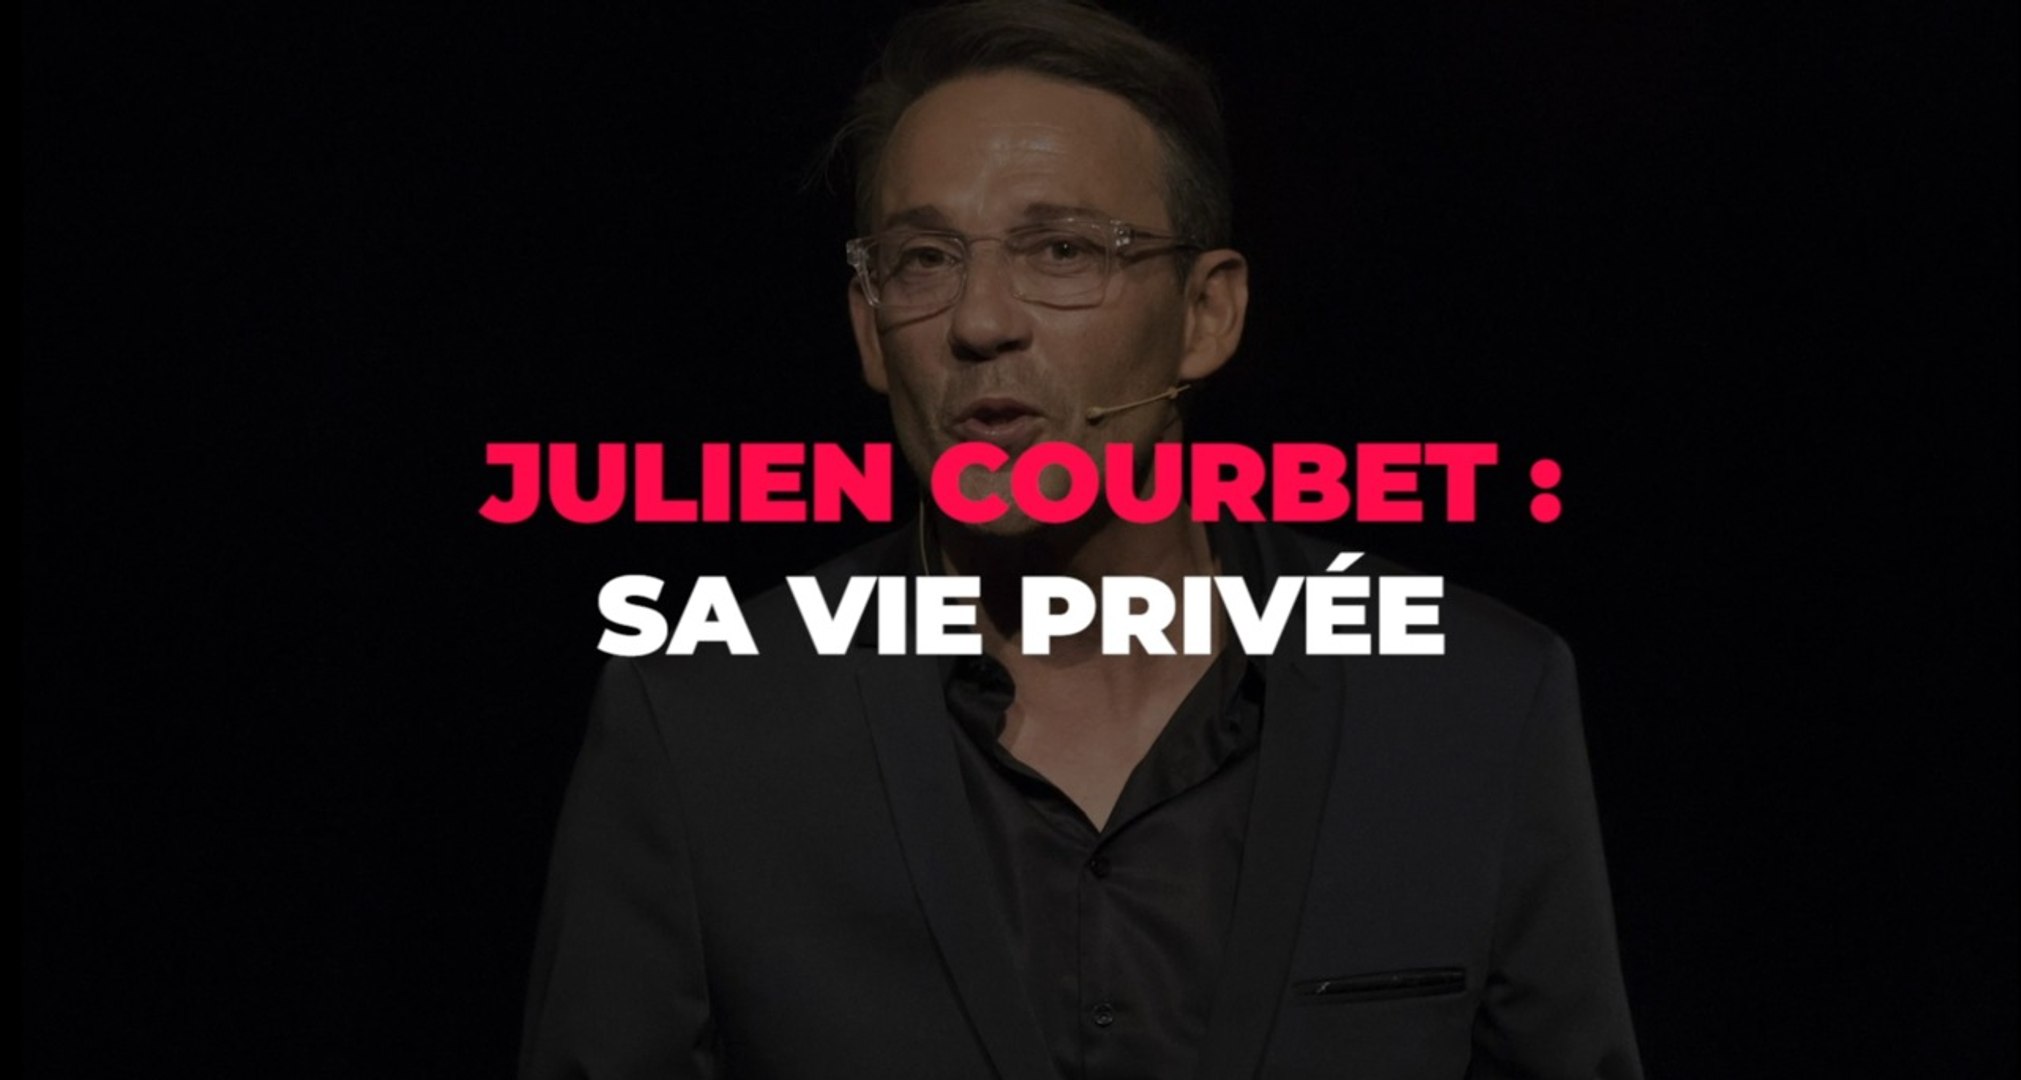 Julien Courbet : ce qu'il faut savoir sur sa vie privée - Vidéo Dailymotion